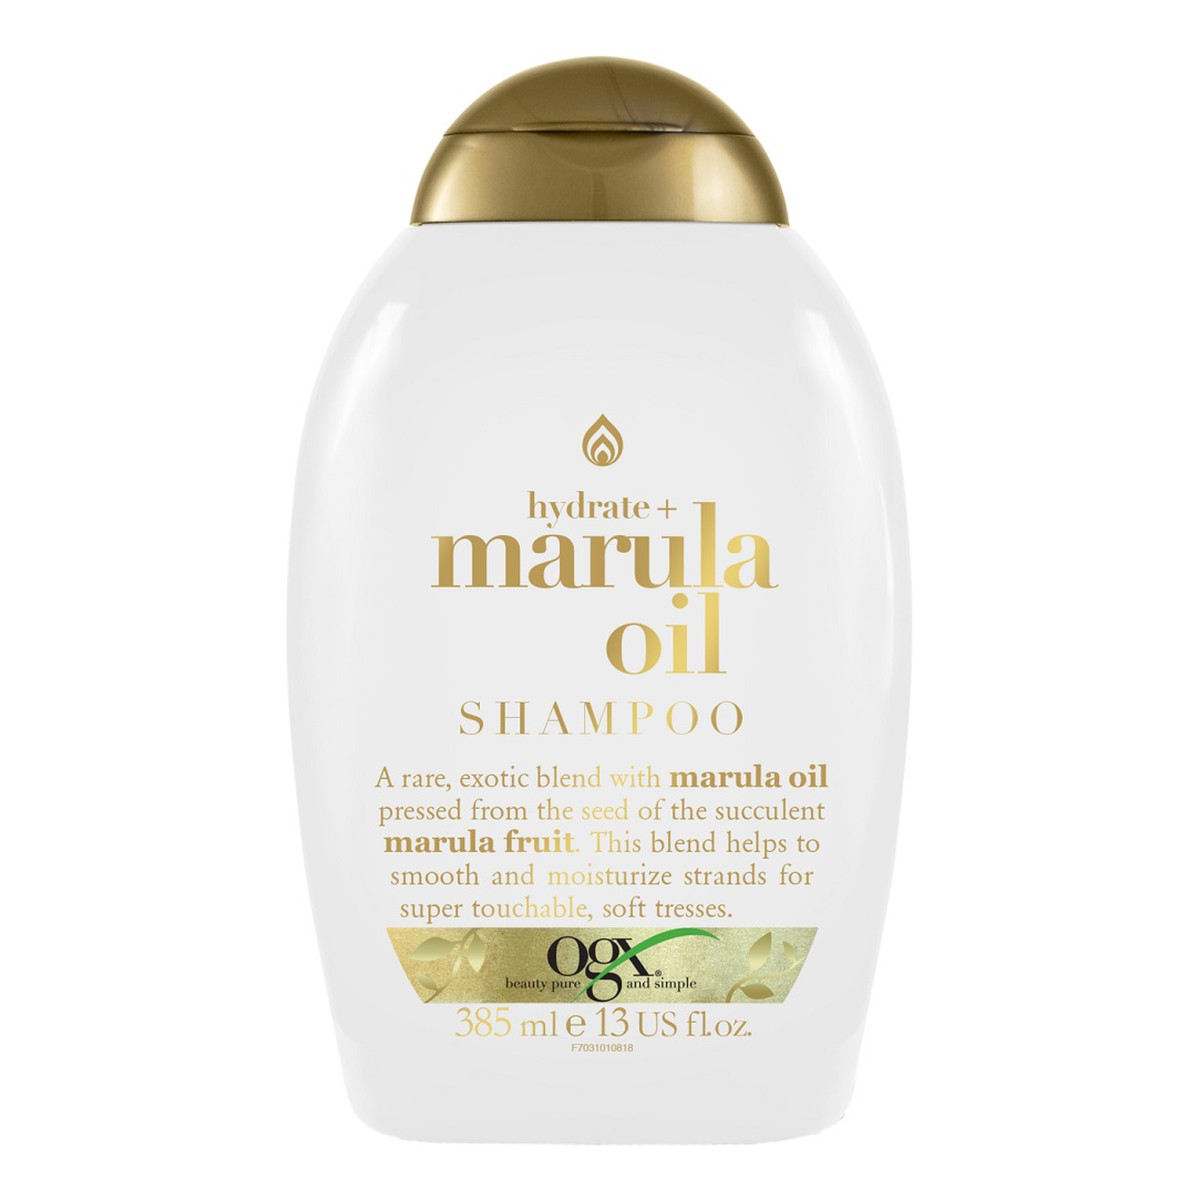 Organix Hydrate + marula oil shampoo nawilżająco-wygładzający szampon do włosów